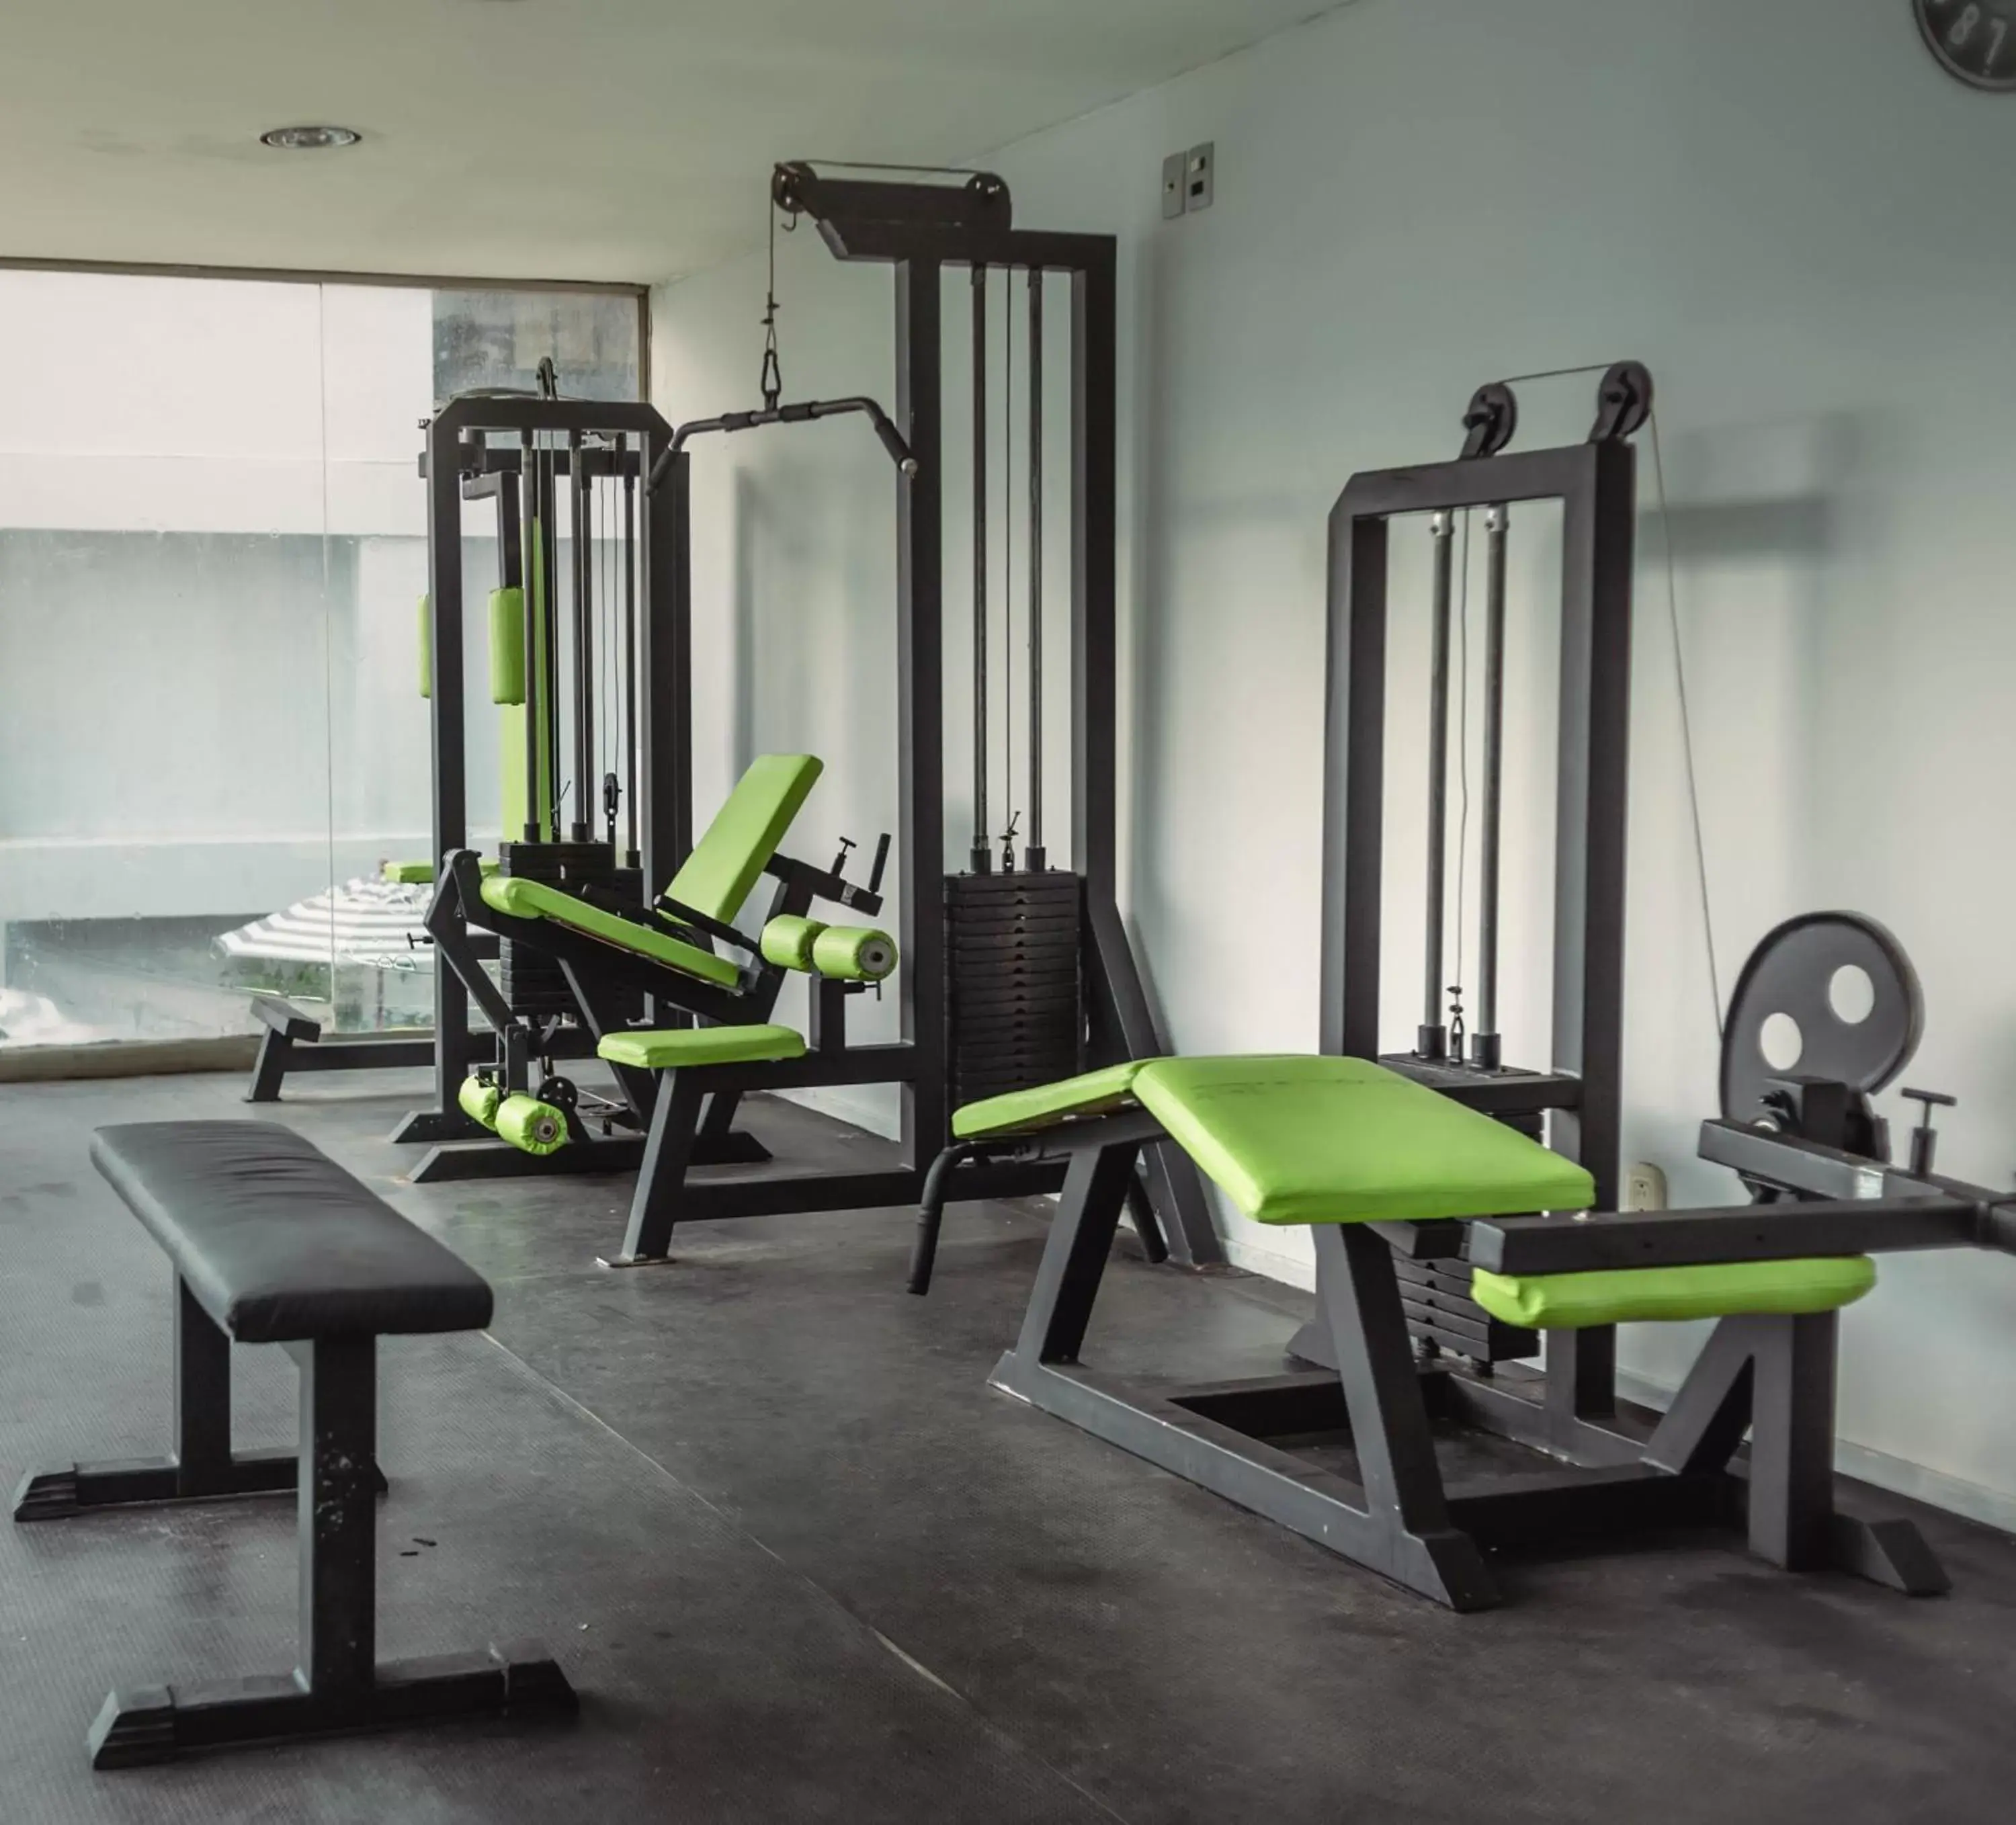 Fitness centre/facilities, Fitness Center/Facilities in Hotel Faranda Express Puerta del Sol Barranquilla